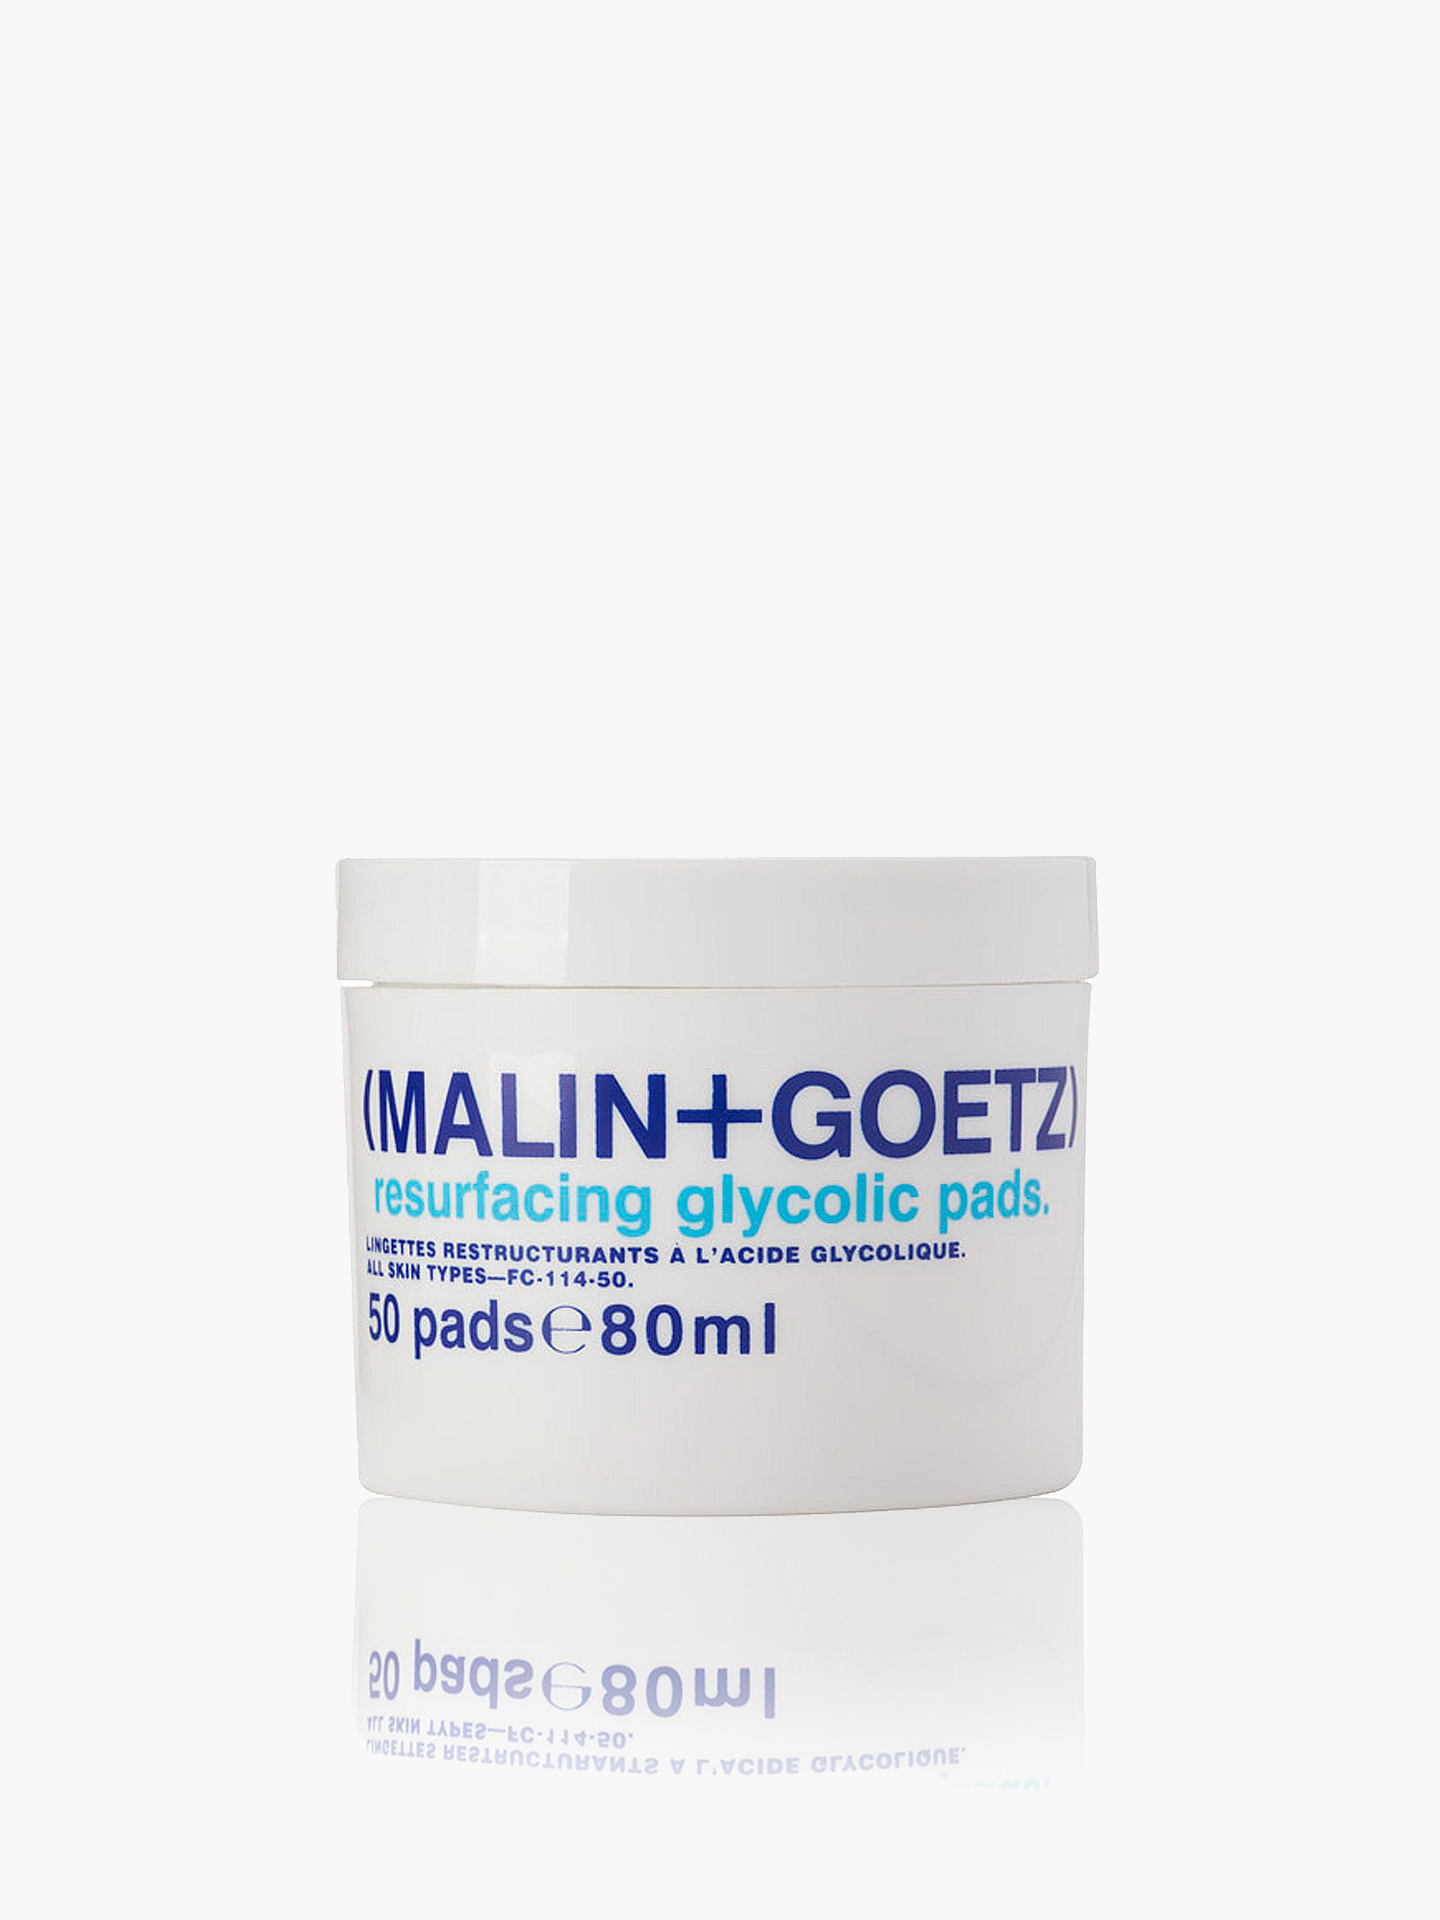 MGFC11450 (MALIN+GOETZ) Отшелушивающие диски для лица с гликолиевой кислотой 50 шт. (80 мл) MGFC11450